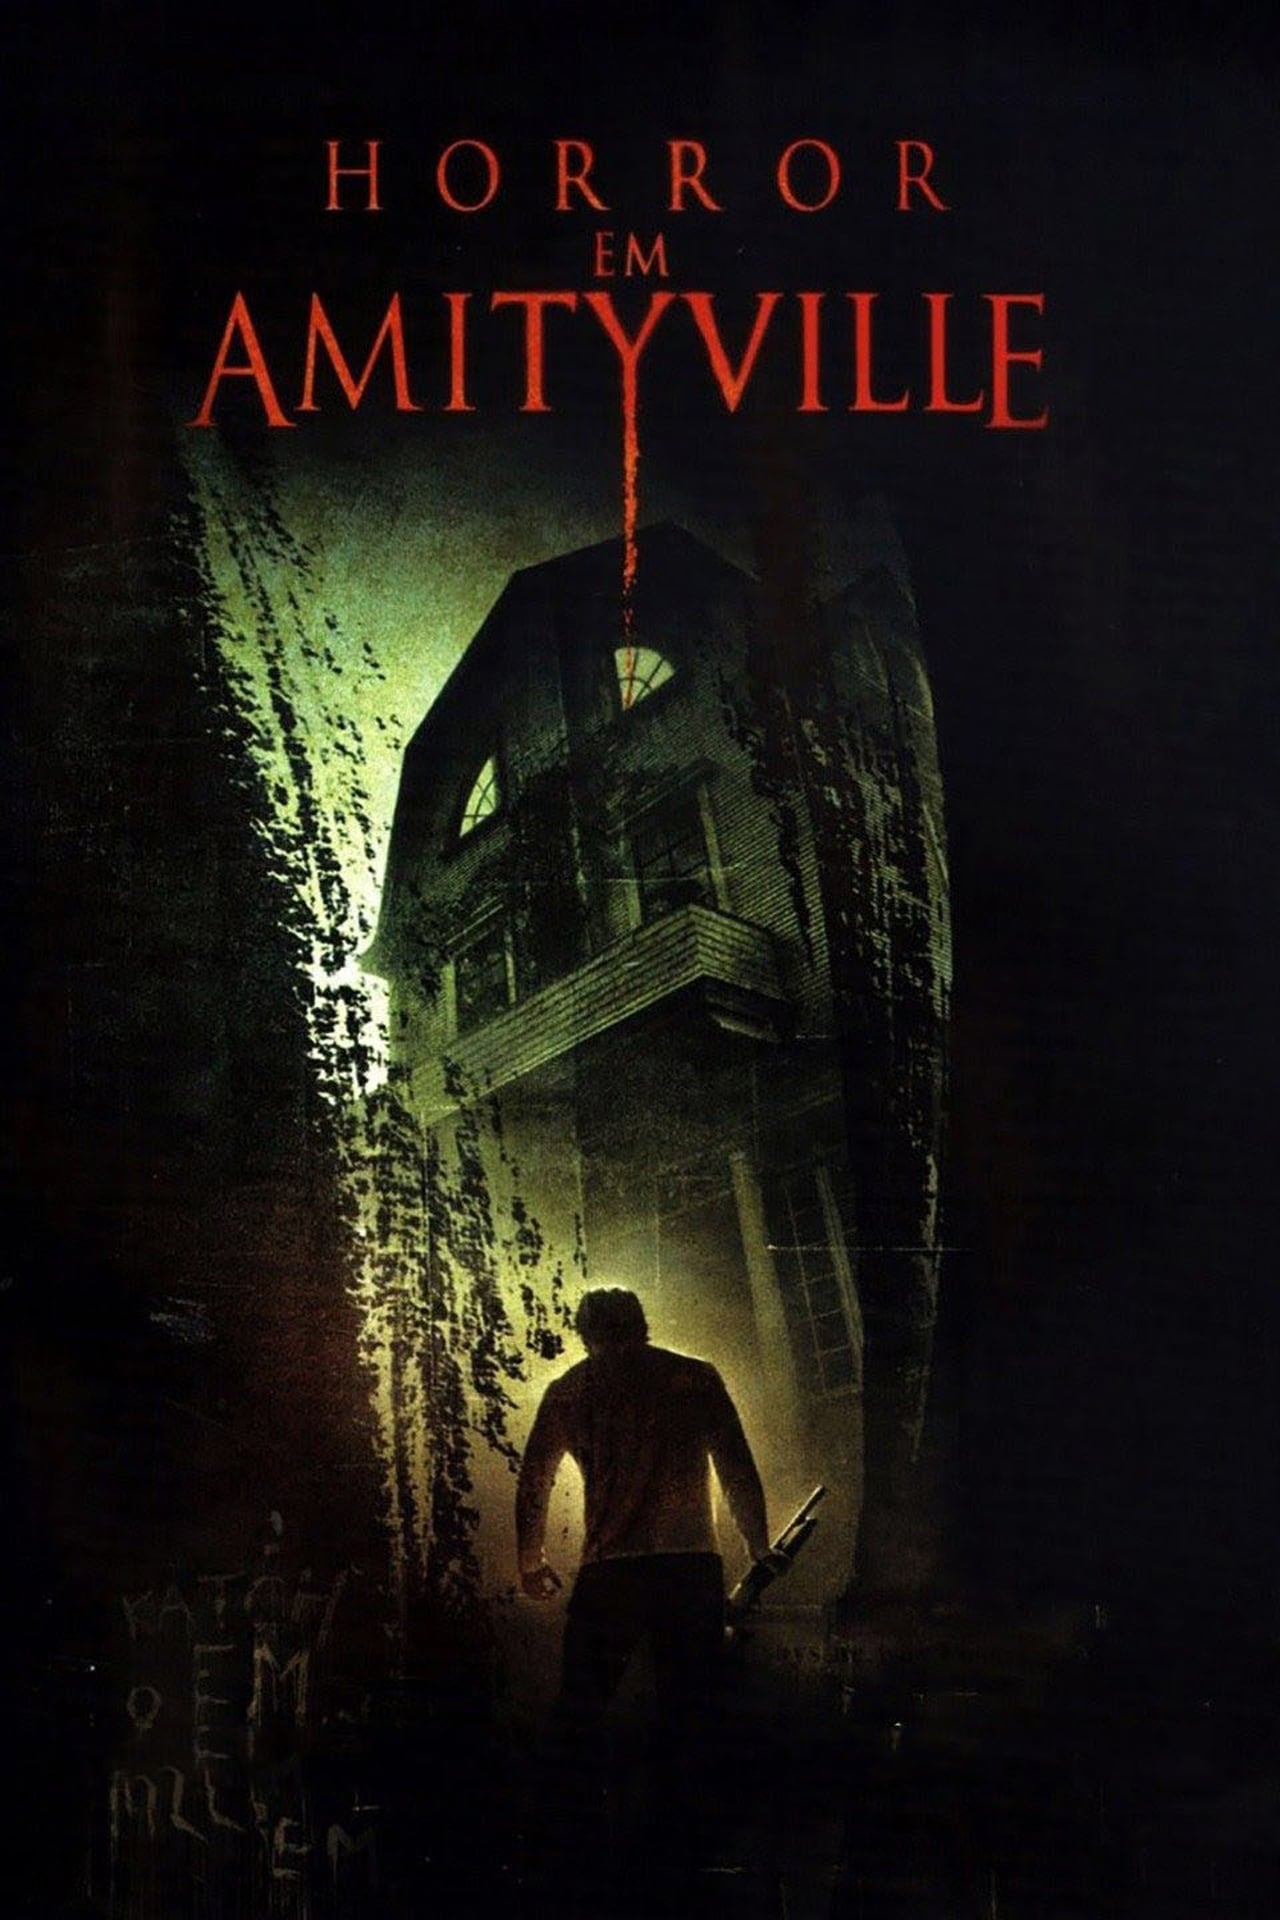 Amityville 2005